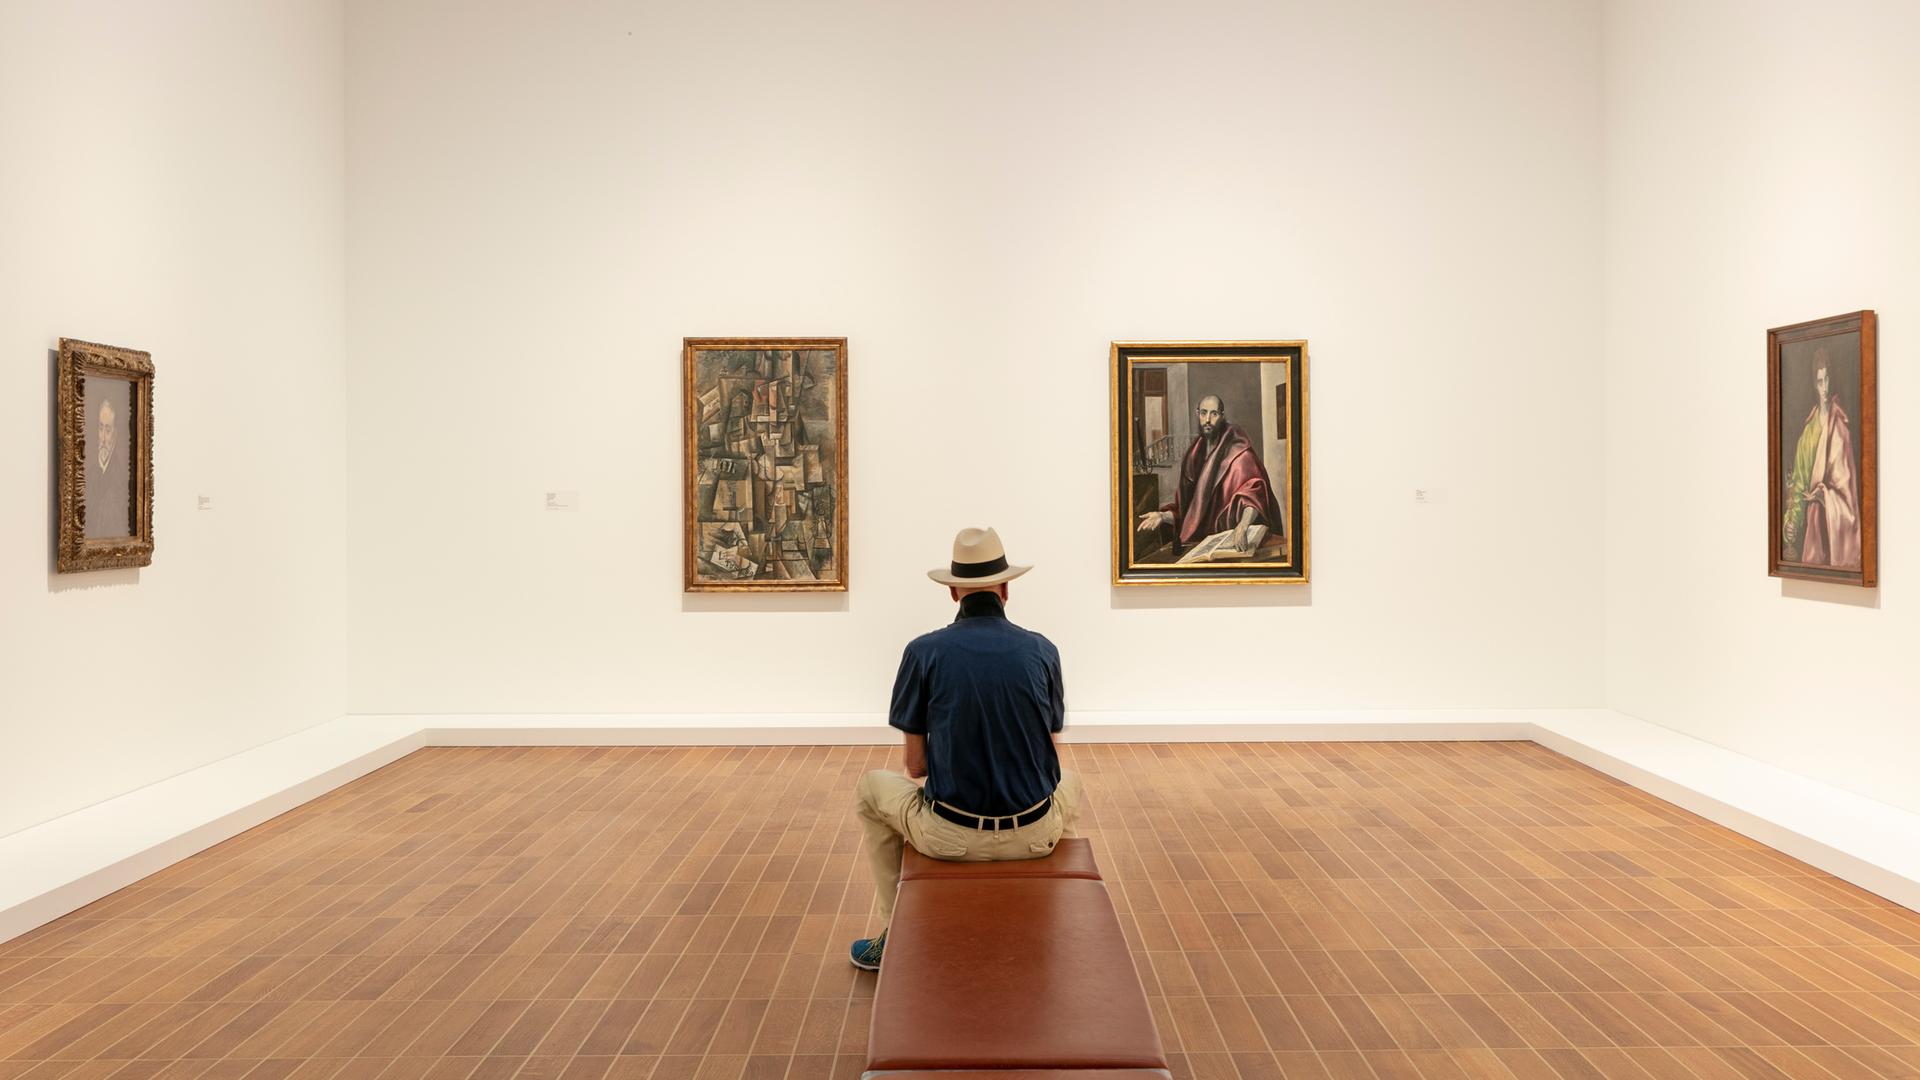 Ausstellungsansicht: Ein Mann sitzt auf einer Bank und betrachtet die Werke von Picasso und El Greco.